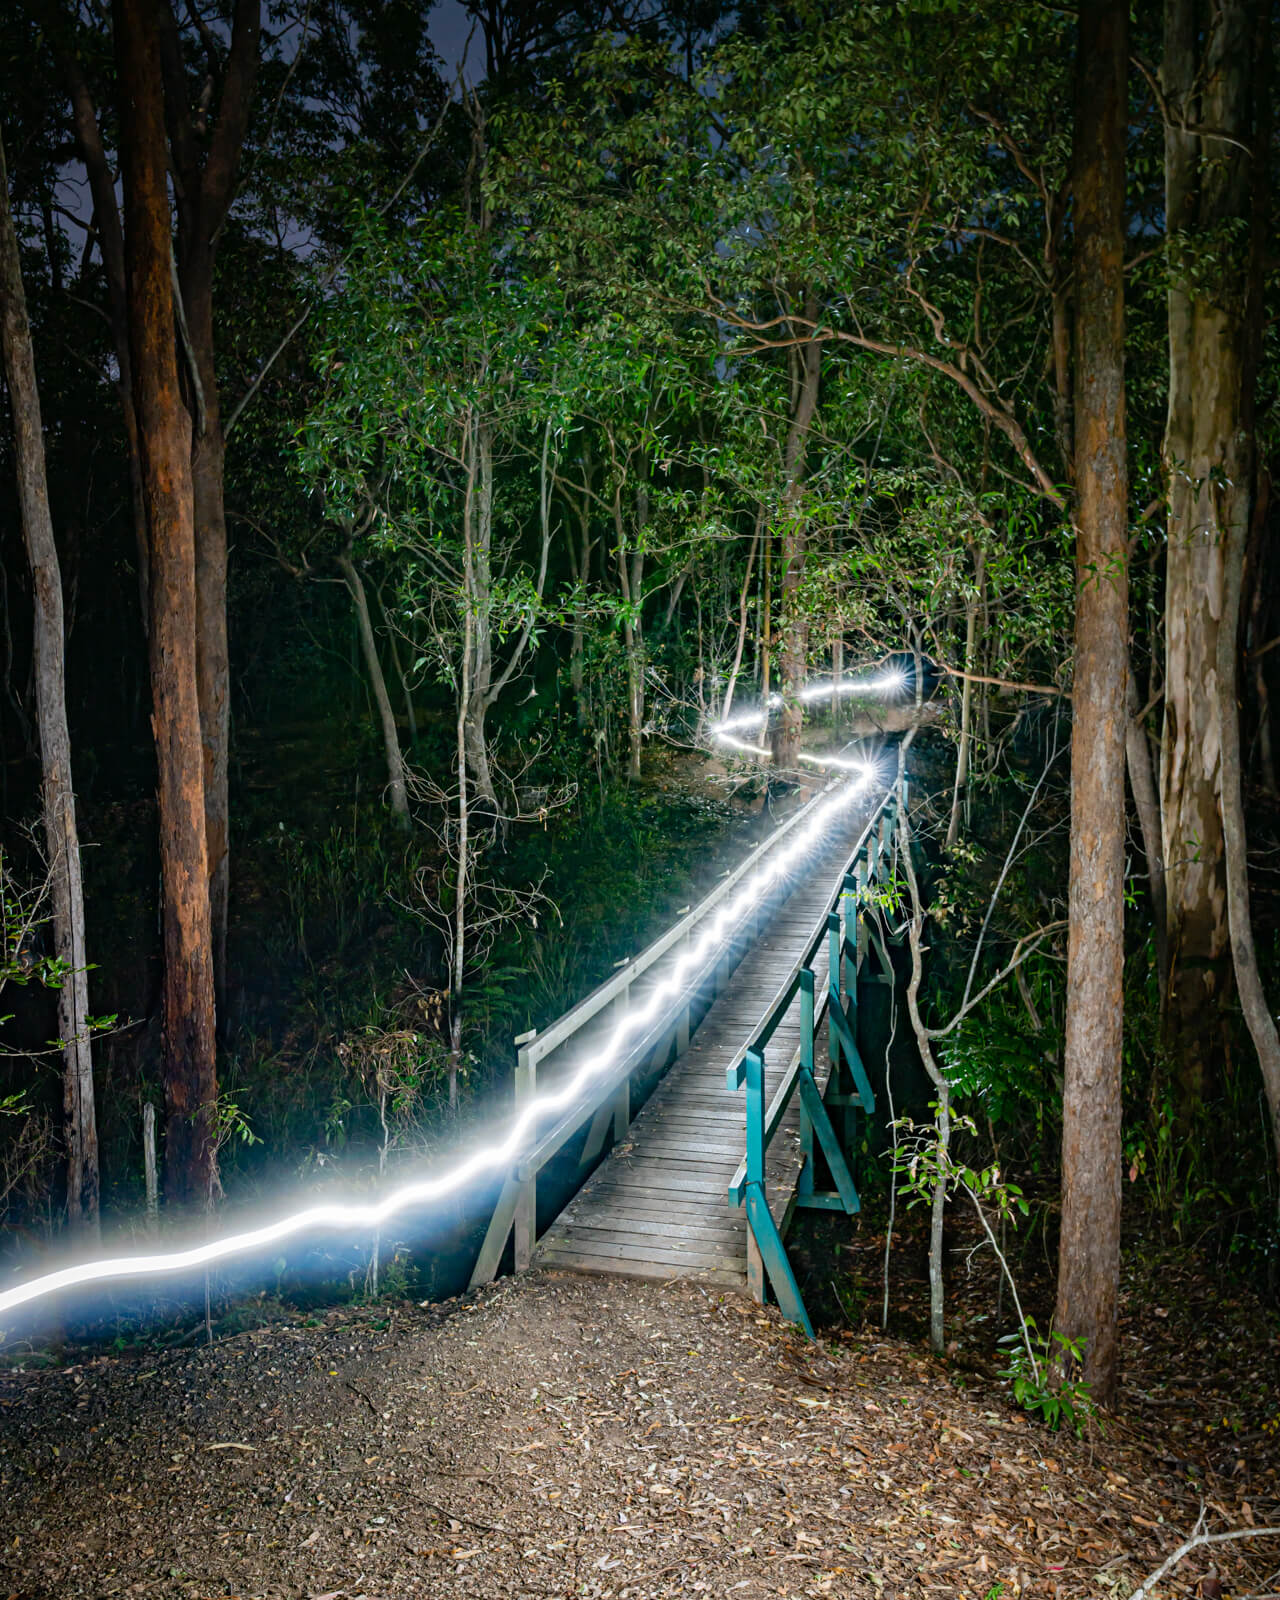 The LumeCube 2.0 evenly illuminates night landscapes